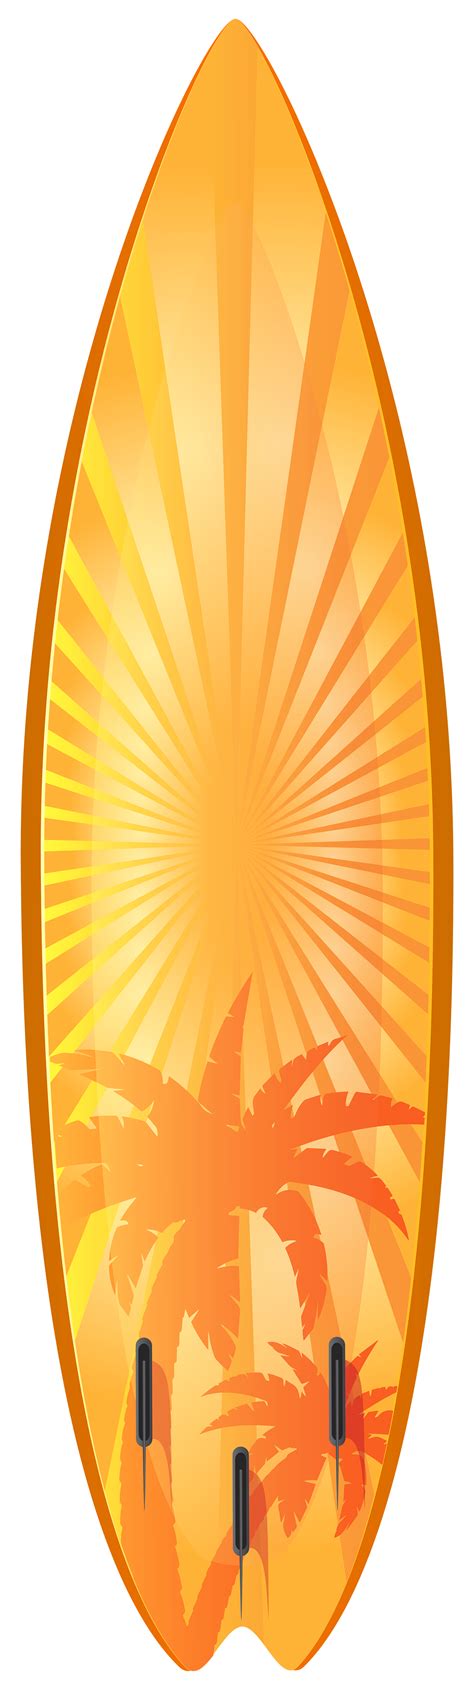 Surfboard Png Transparent Surfboardpng Images Pluspng